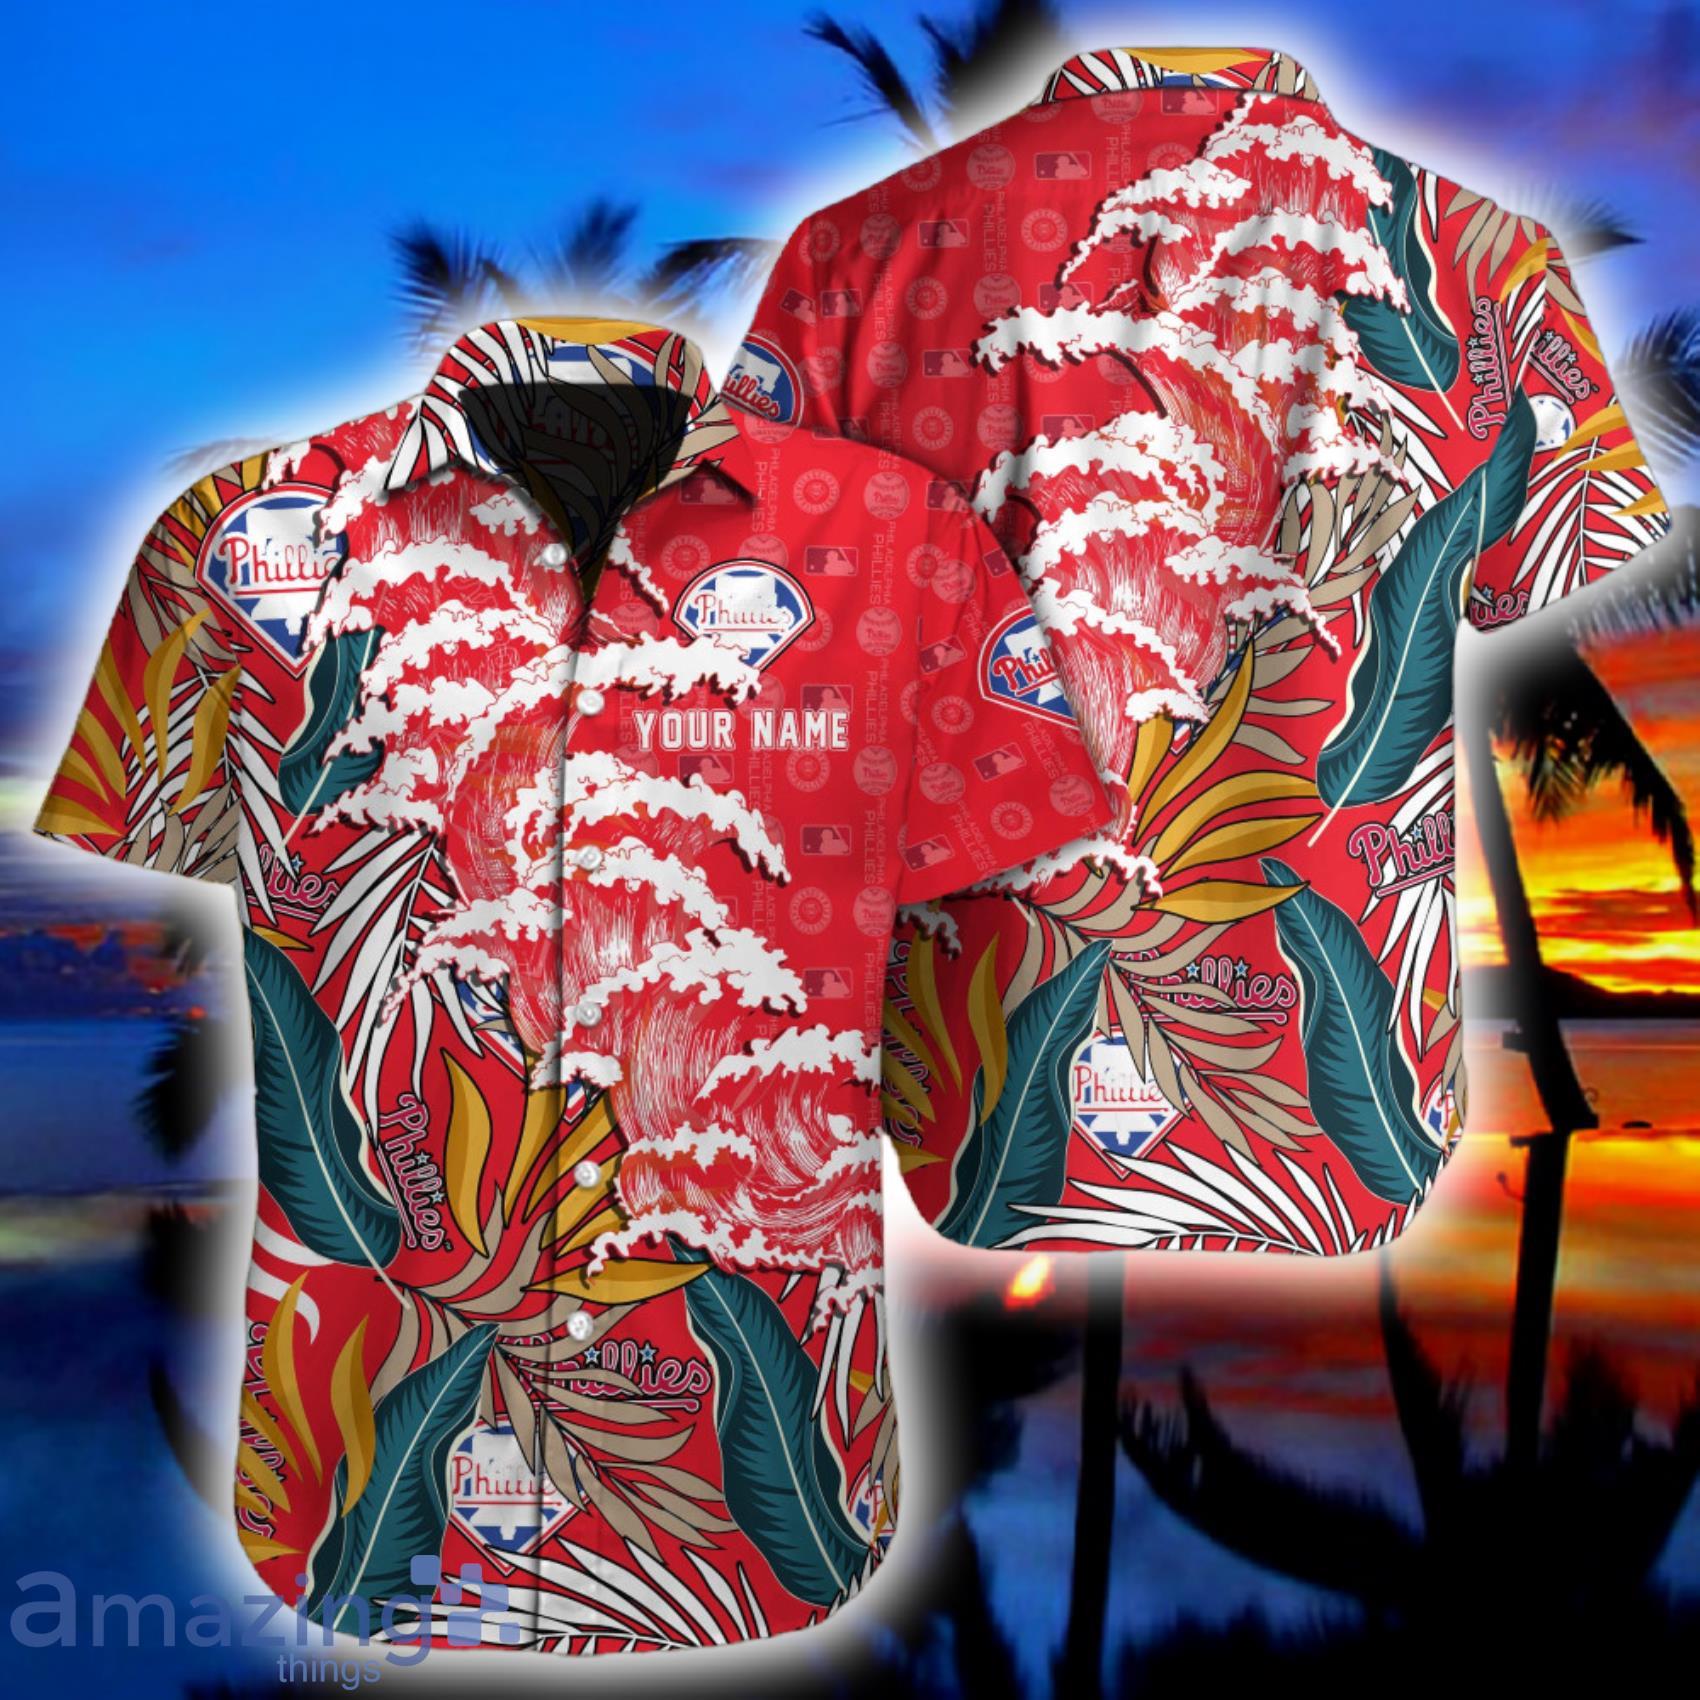 Philadelphia Phillies MLB Flower Hawaiian Shirt For Men Women Best Gift For  Fans